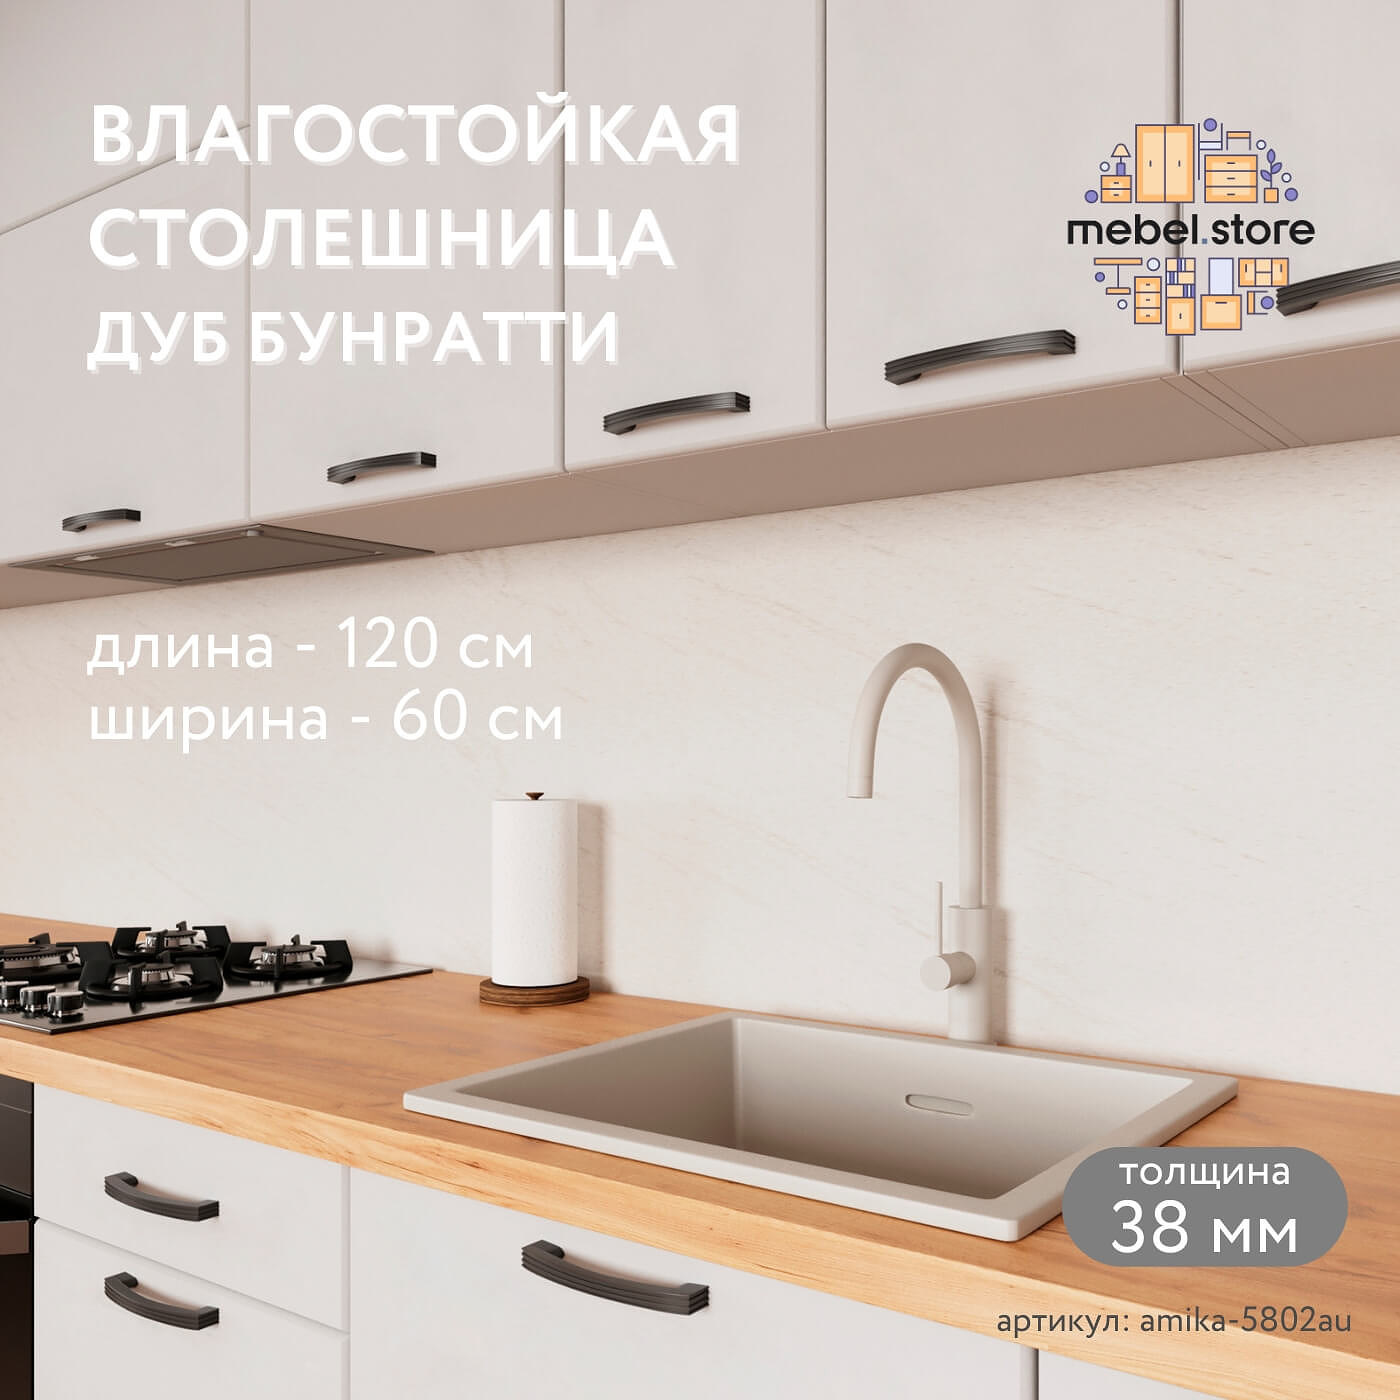 Столешница Амика-5802au минимализм для кухни - фото 1 large